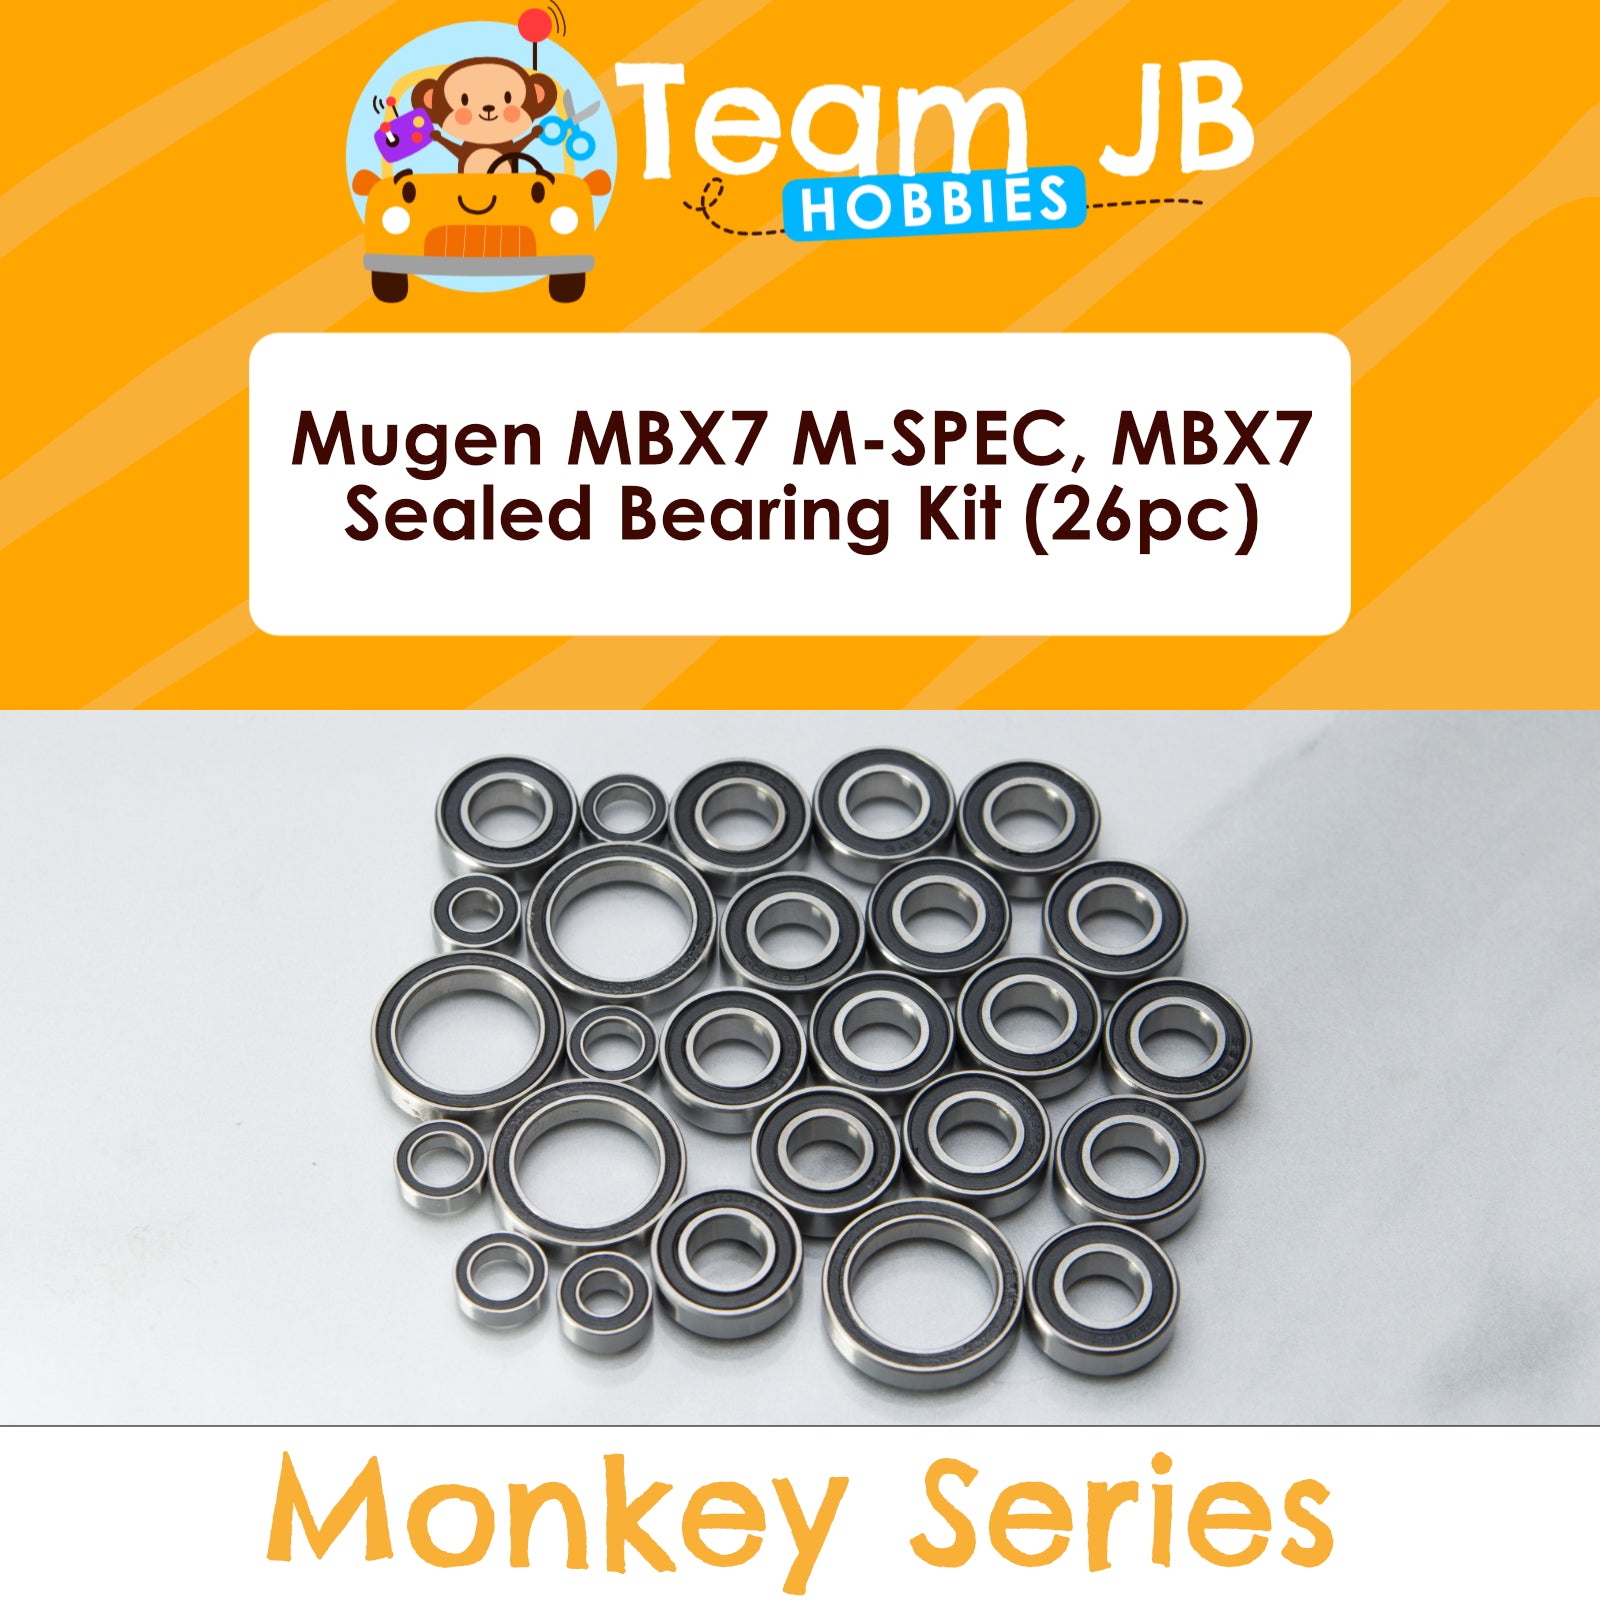 Mugen MBX7 M-SPEC, MBX7 - Sealed Bearing Kit